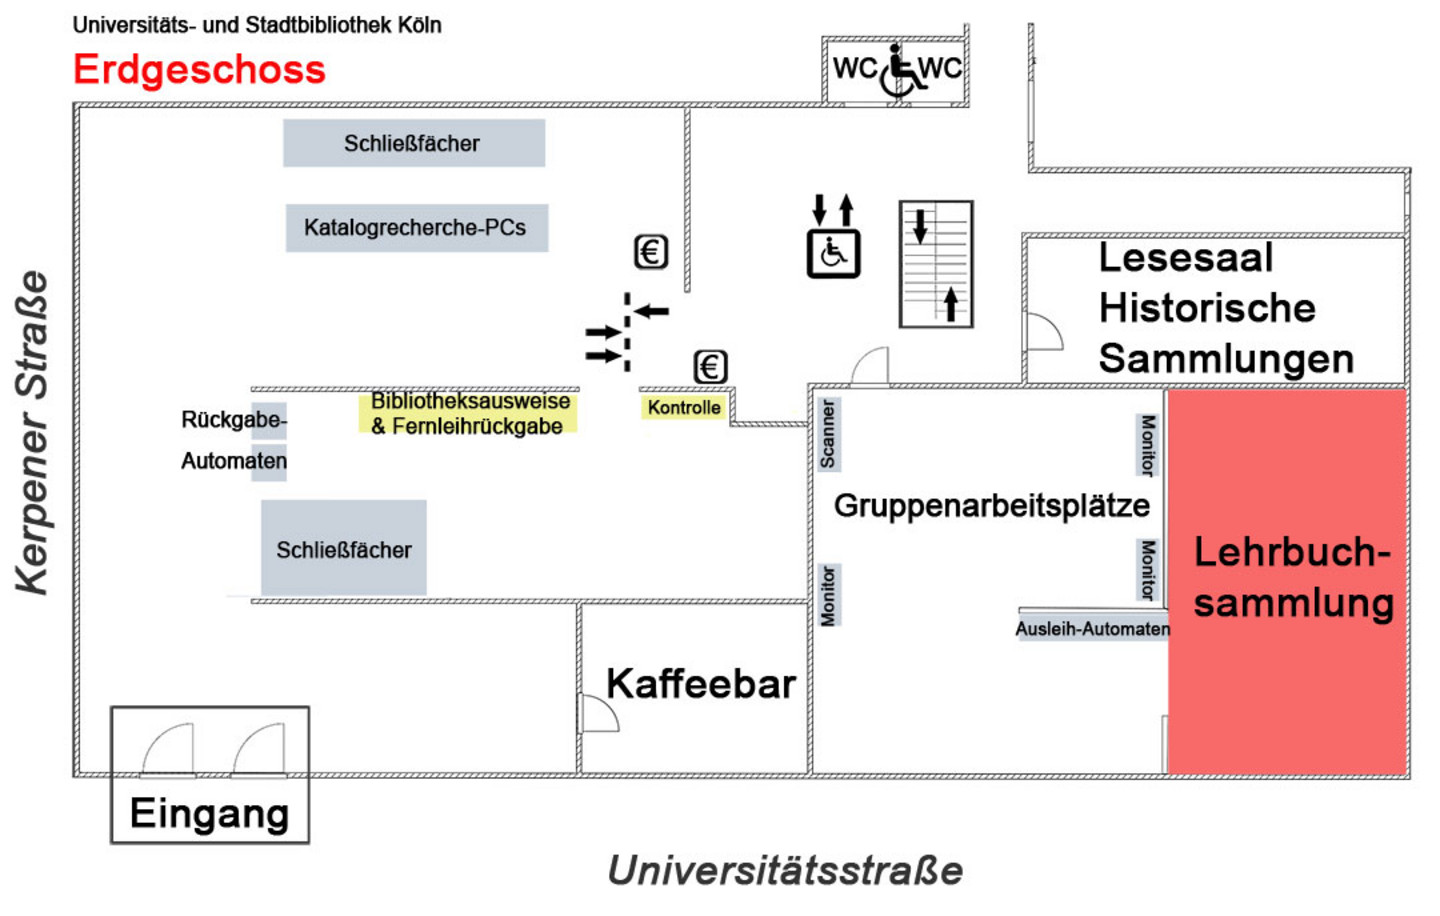 Lageplan des Ergeschosses der Universitäts- und Stadtbibliothek Köln. Hervorgehoben ist die Lehrbuchsammlung.